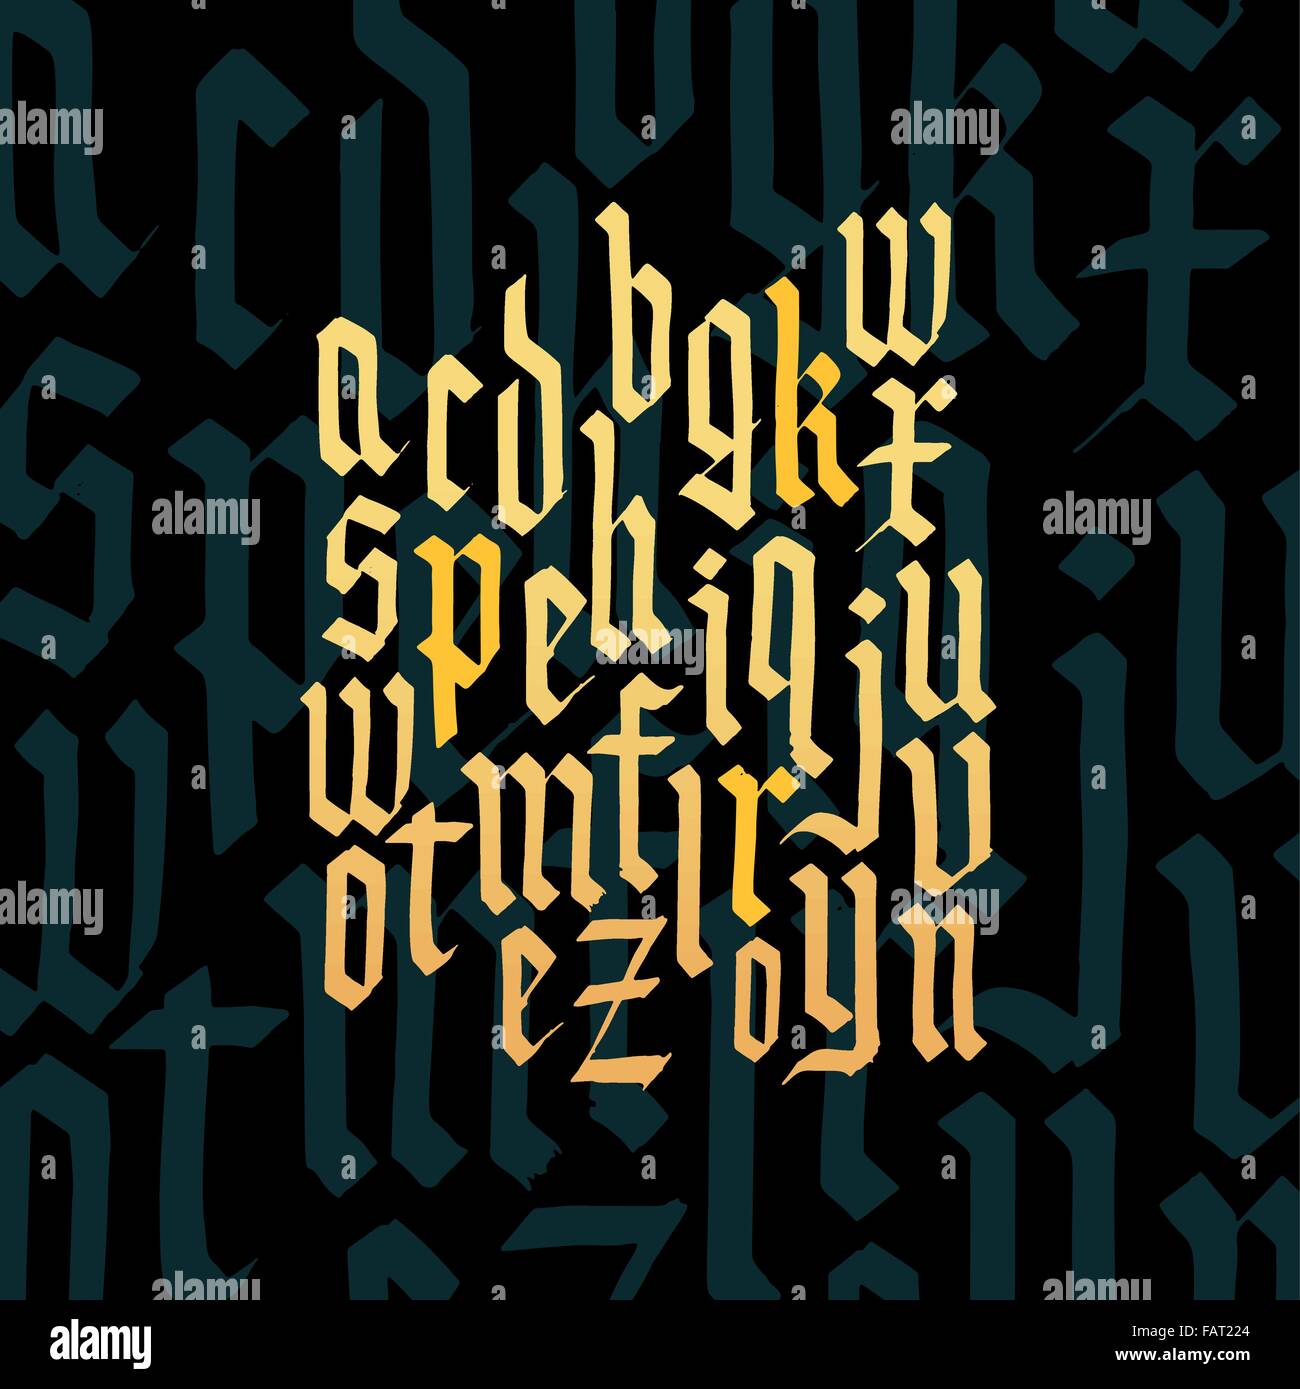 Composizione di lettere minuscole blackletter font gotico. Illustrazione Vettoriale